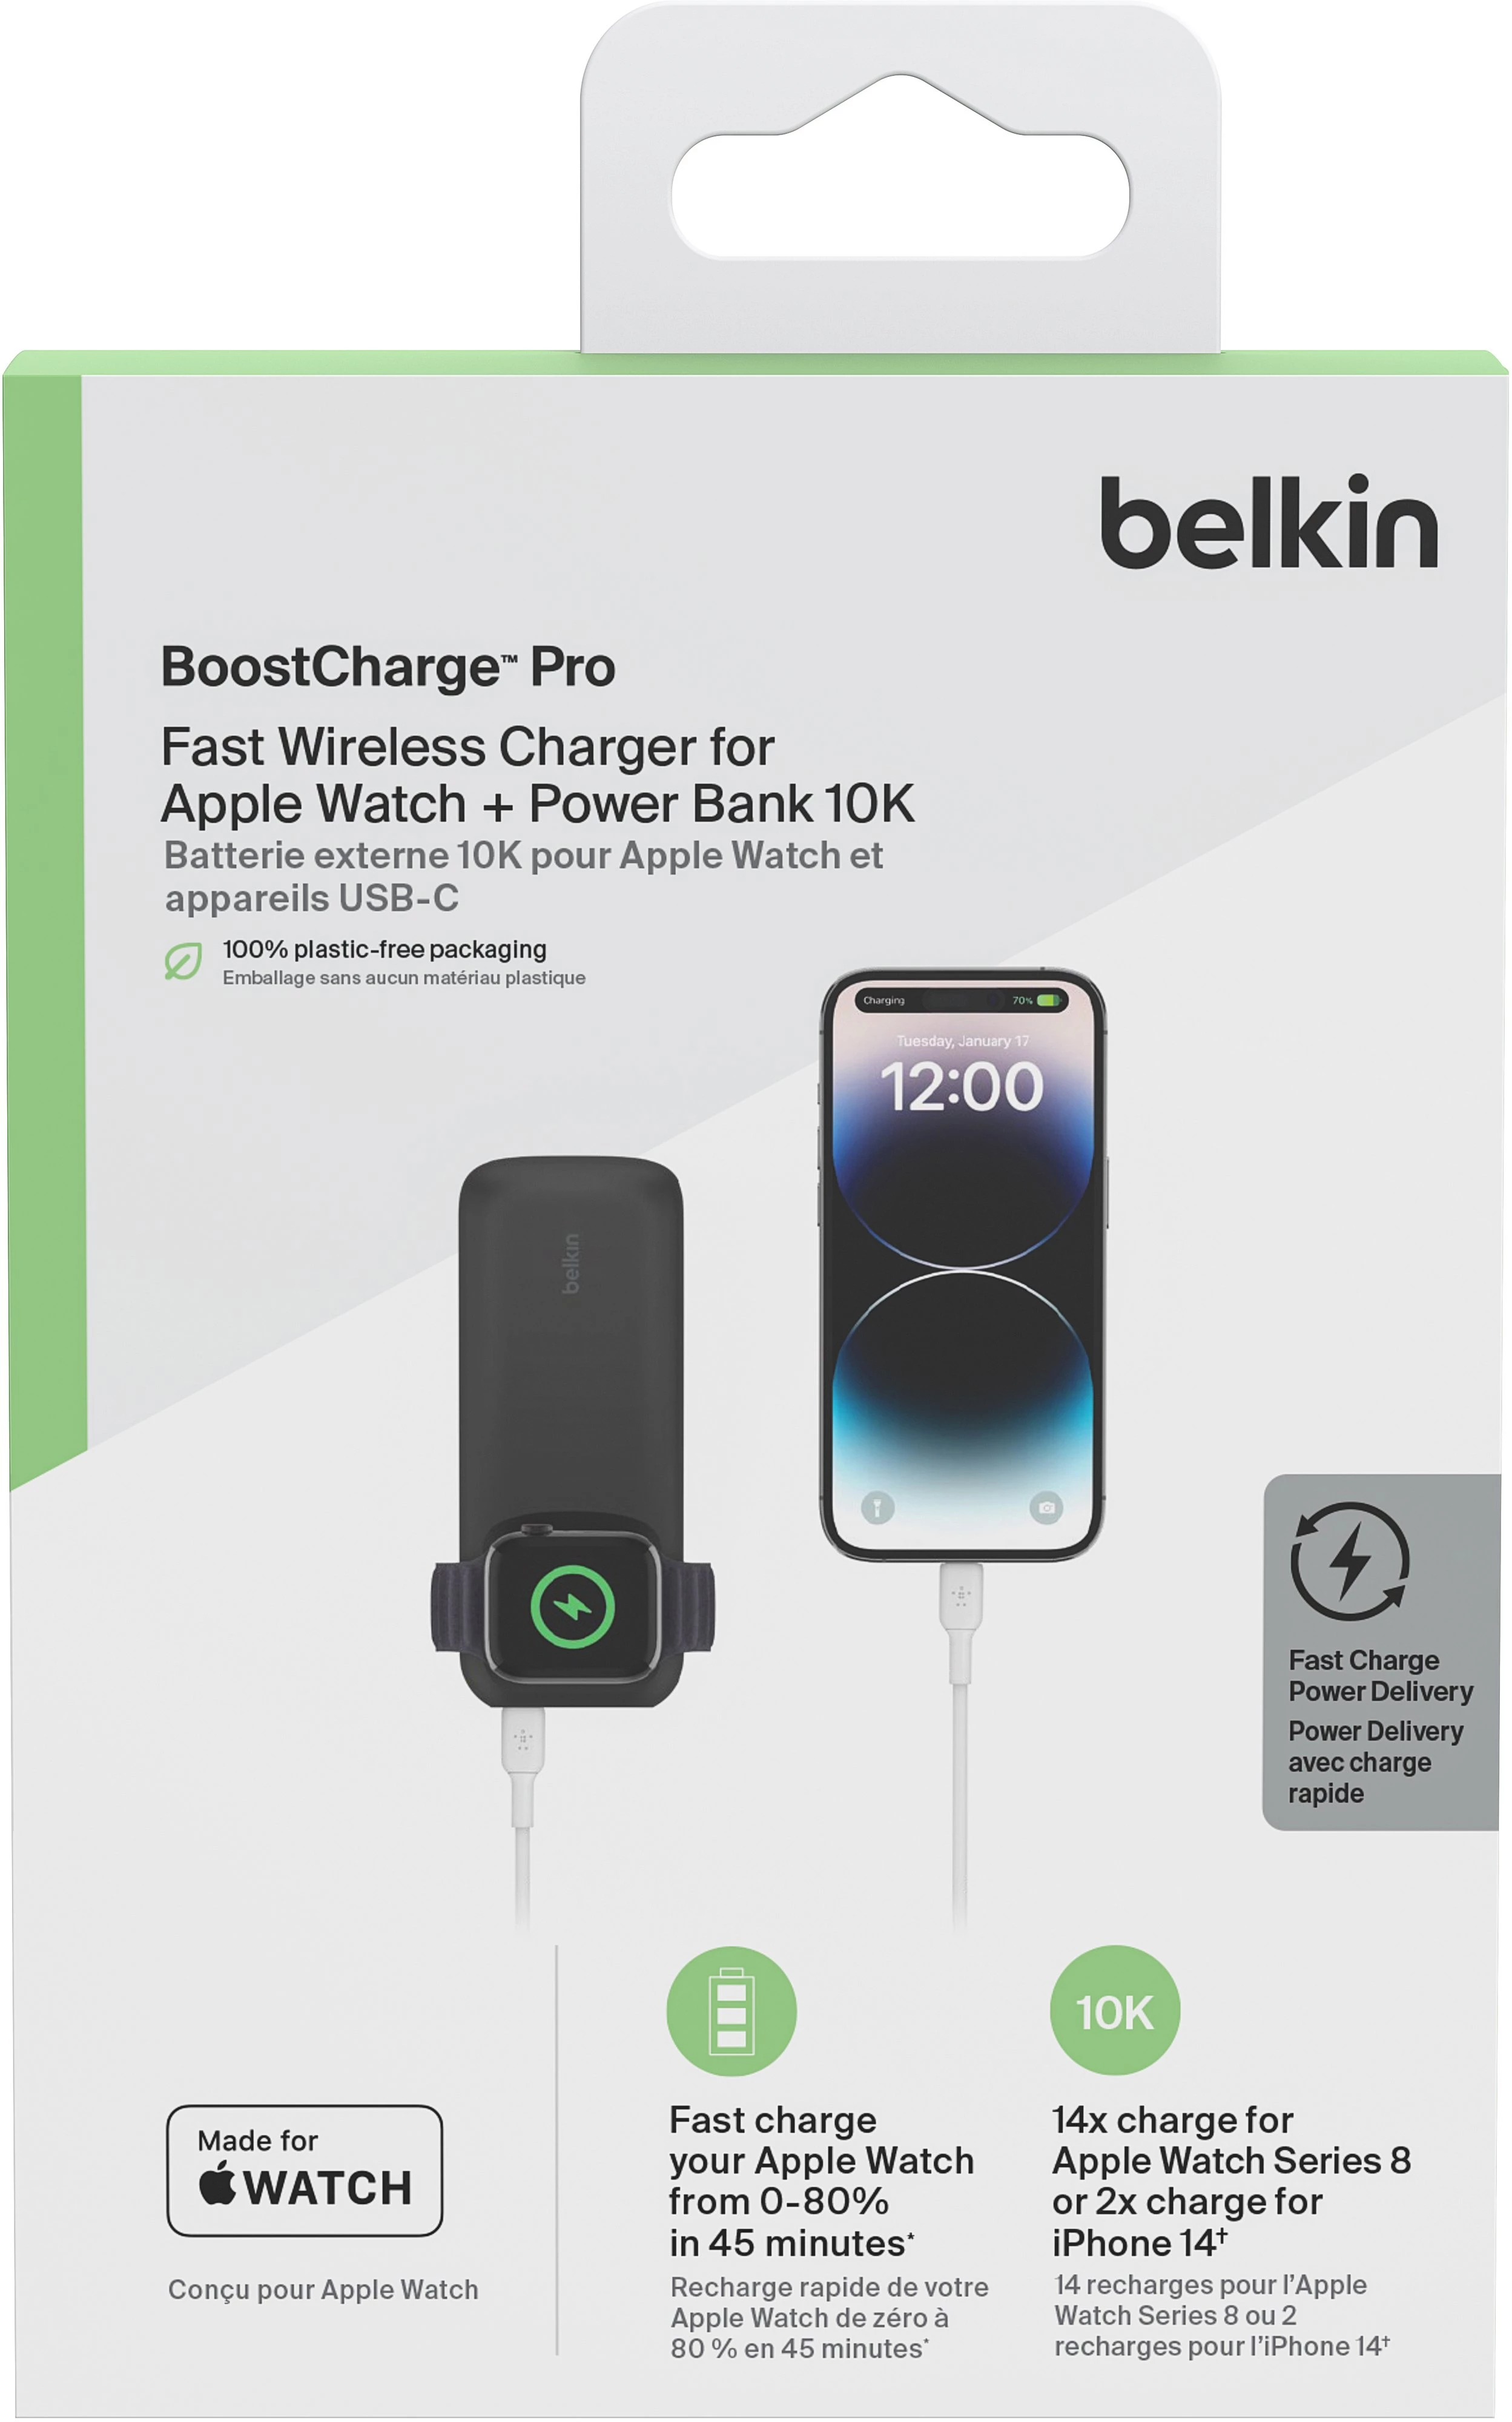 Fast Wireless Charger for Apple Watch + Power Bank 10K | Belkin US